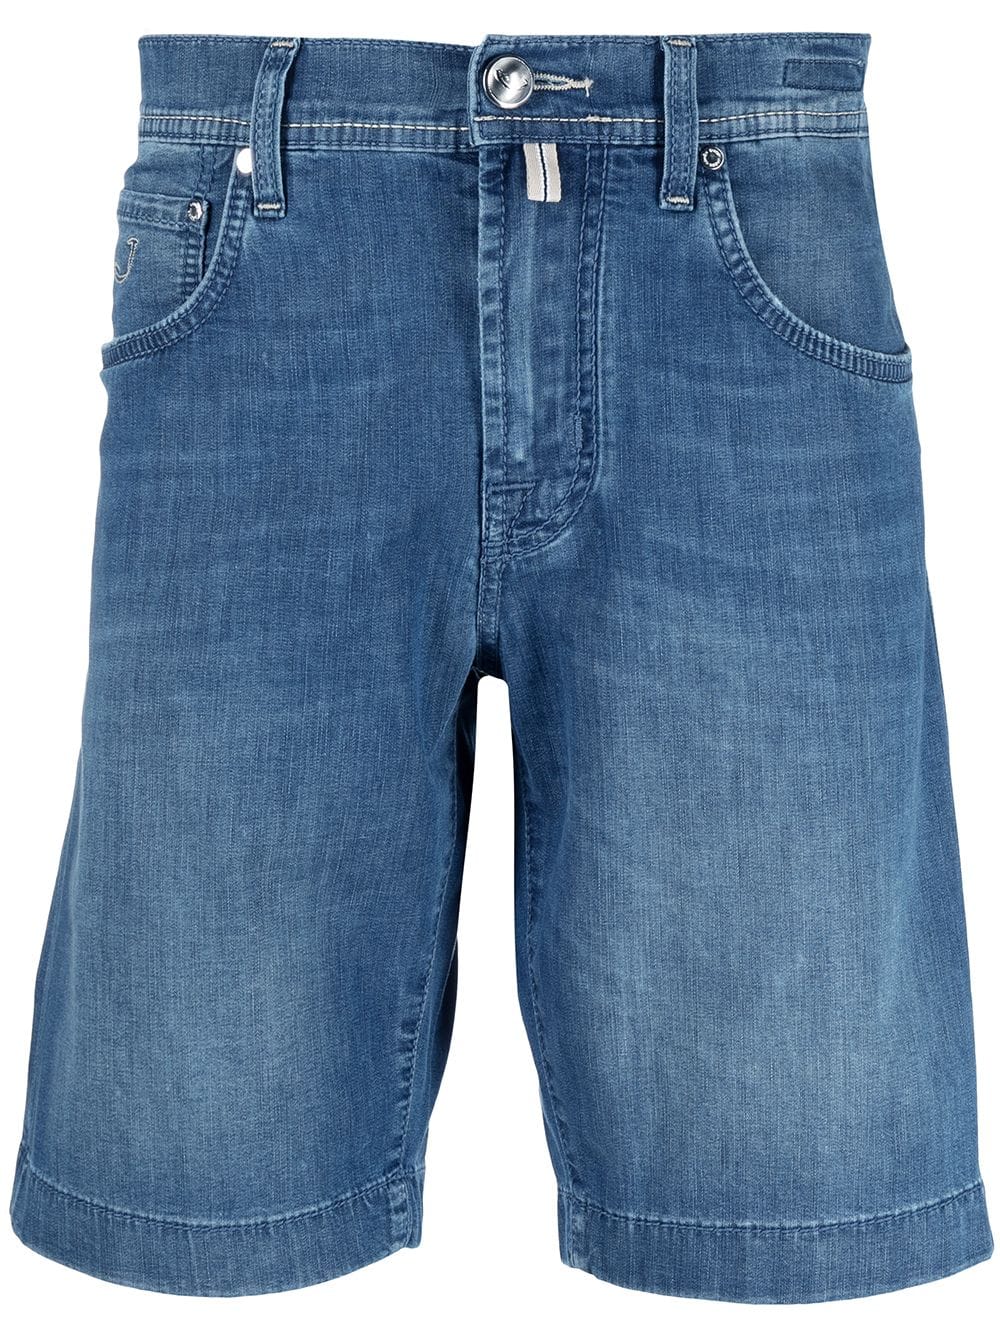 фото Jacob cohen джинсовые шорты с эффектом потертости